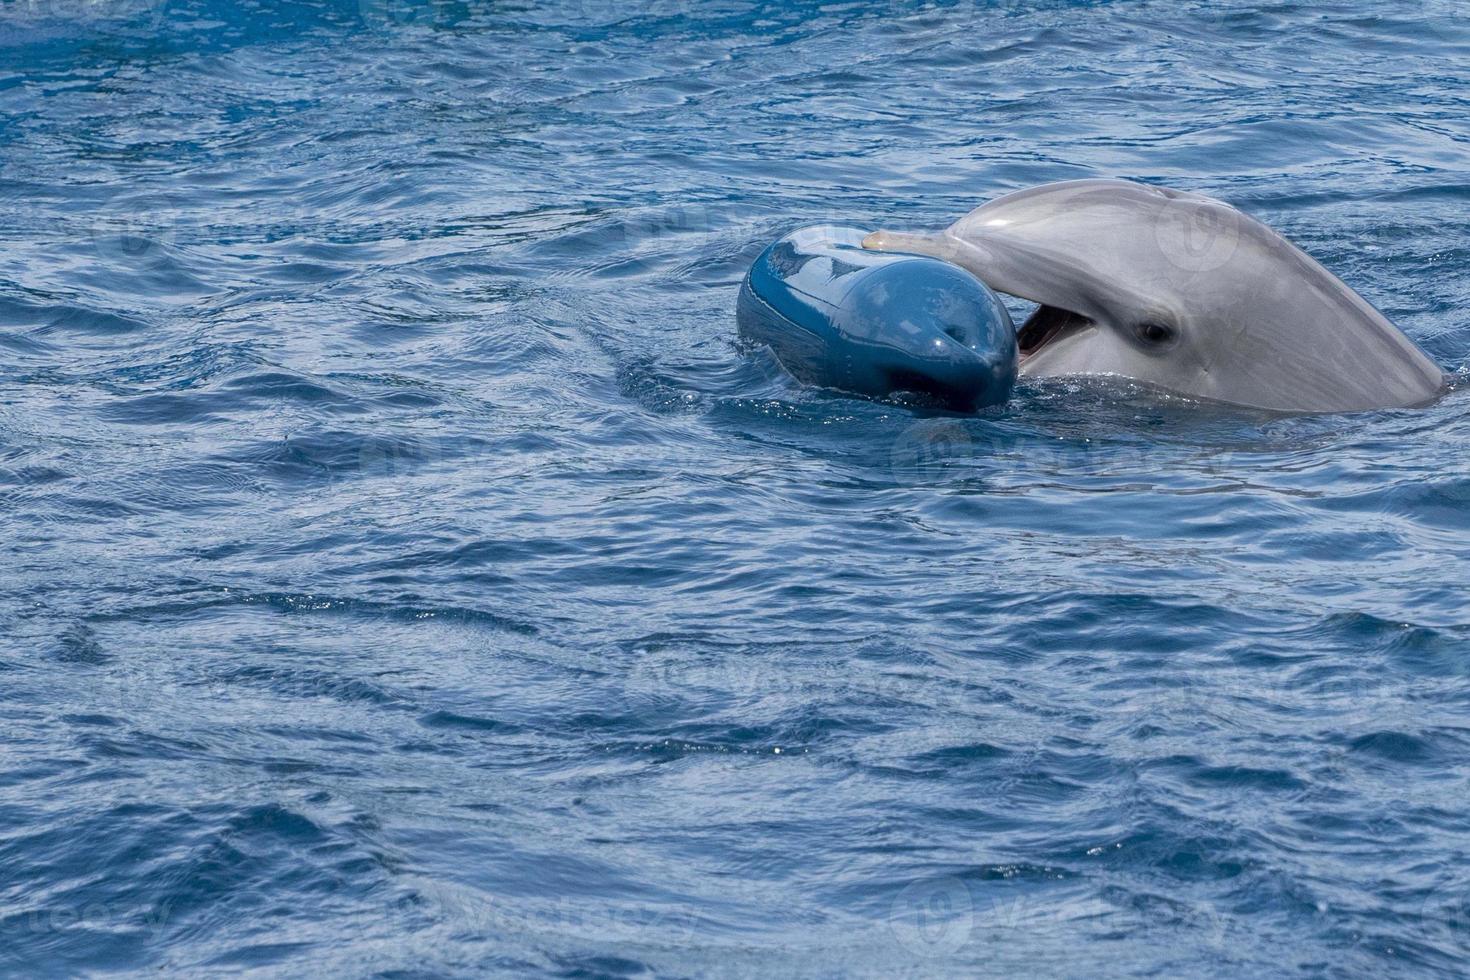 delfín jugando con boya de plástico foto